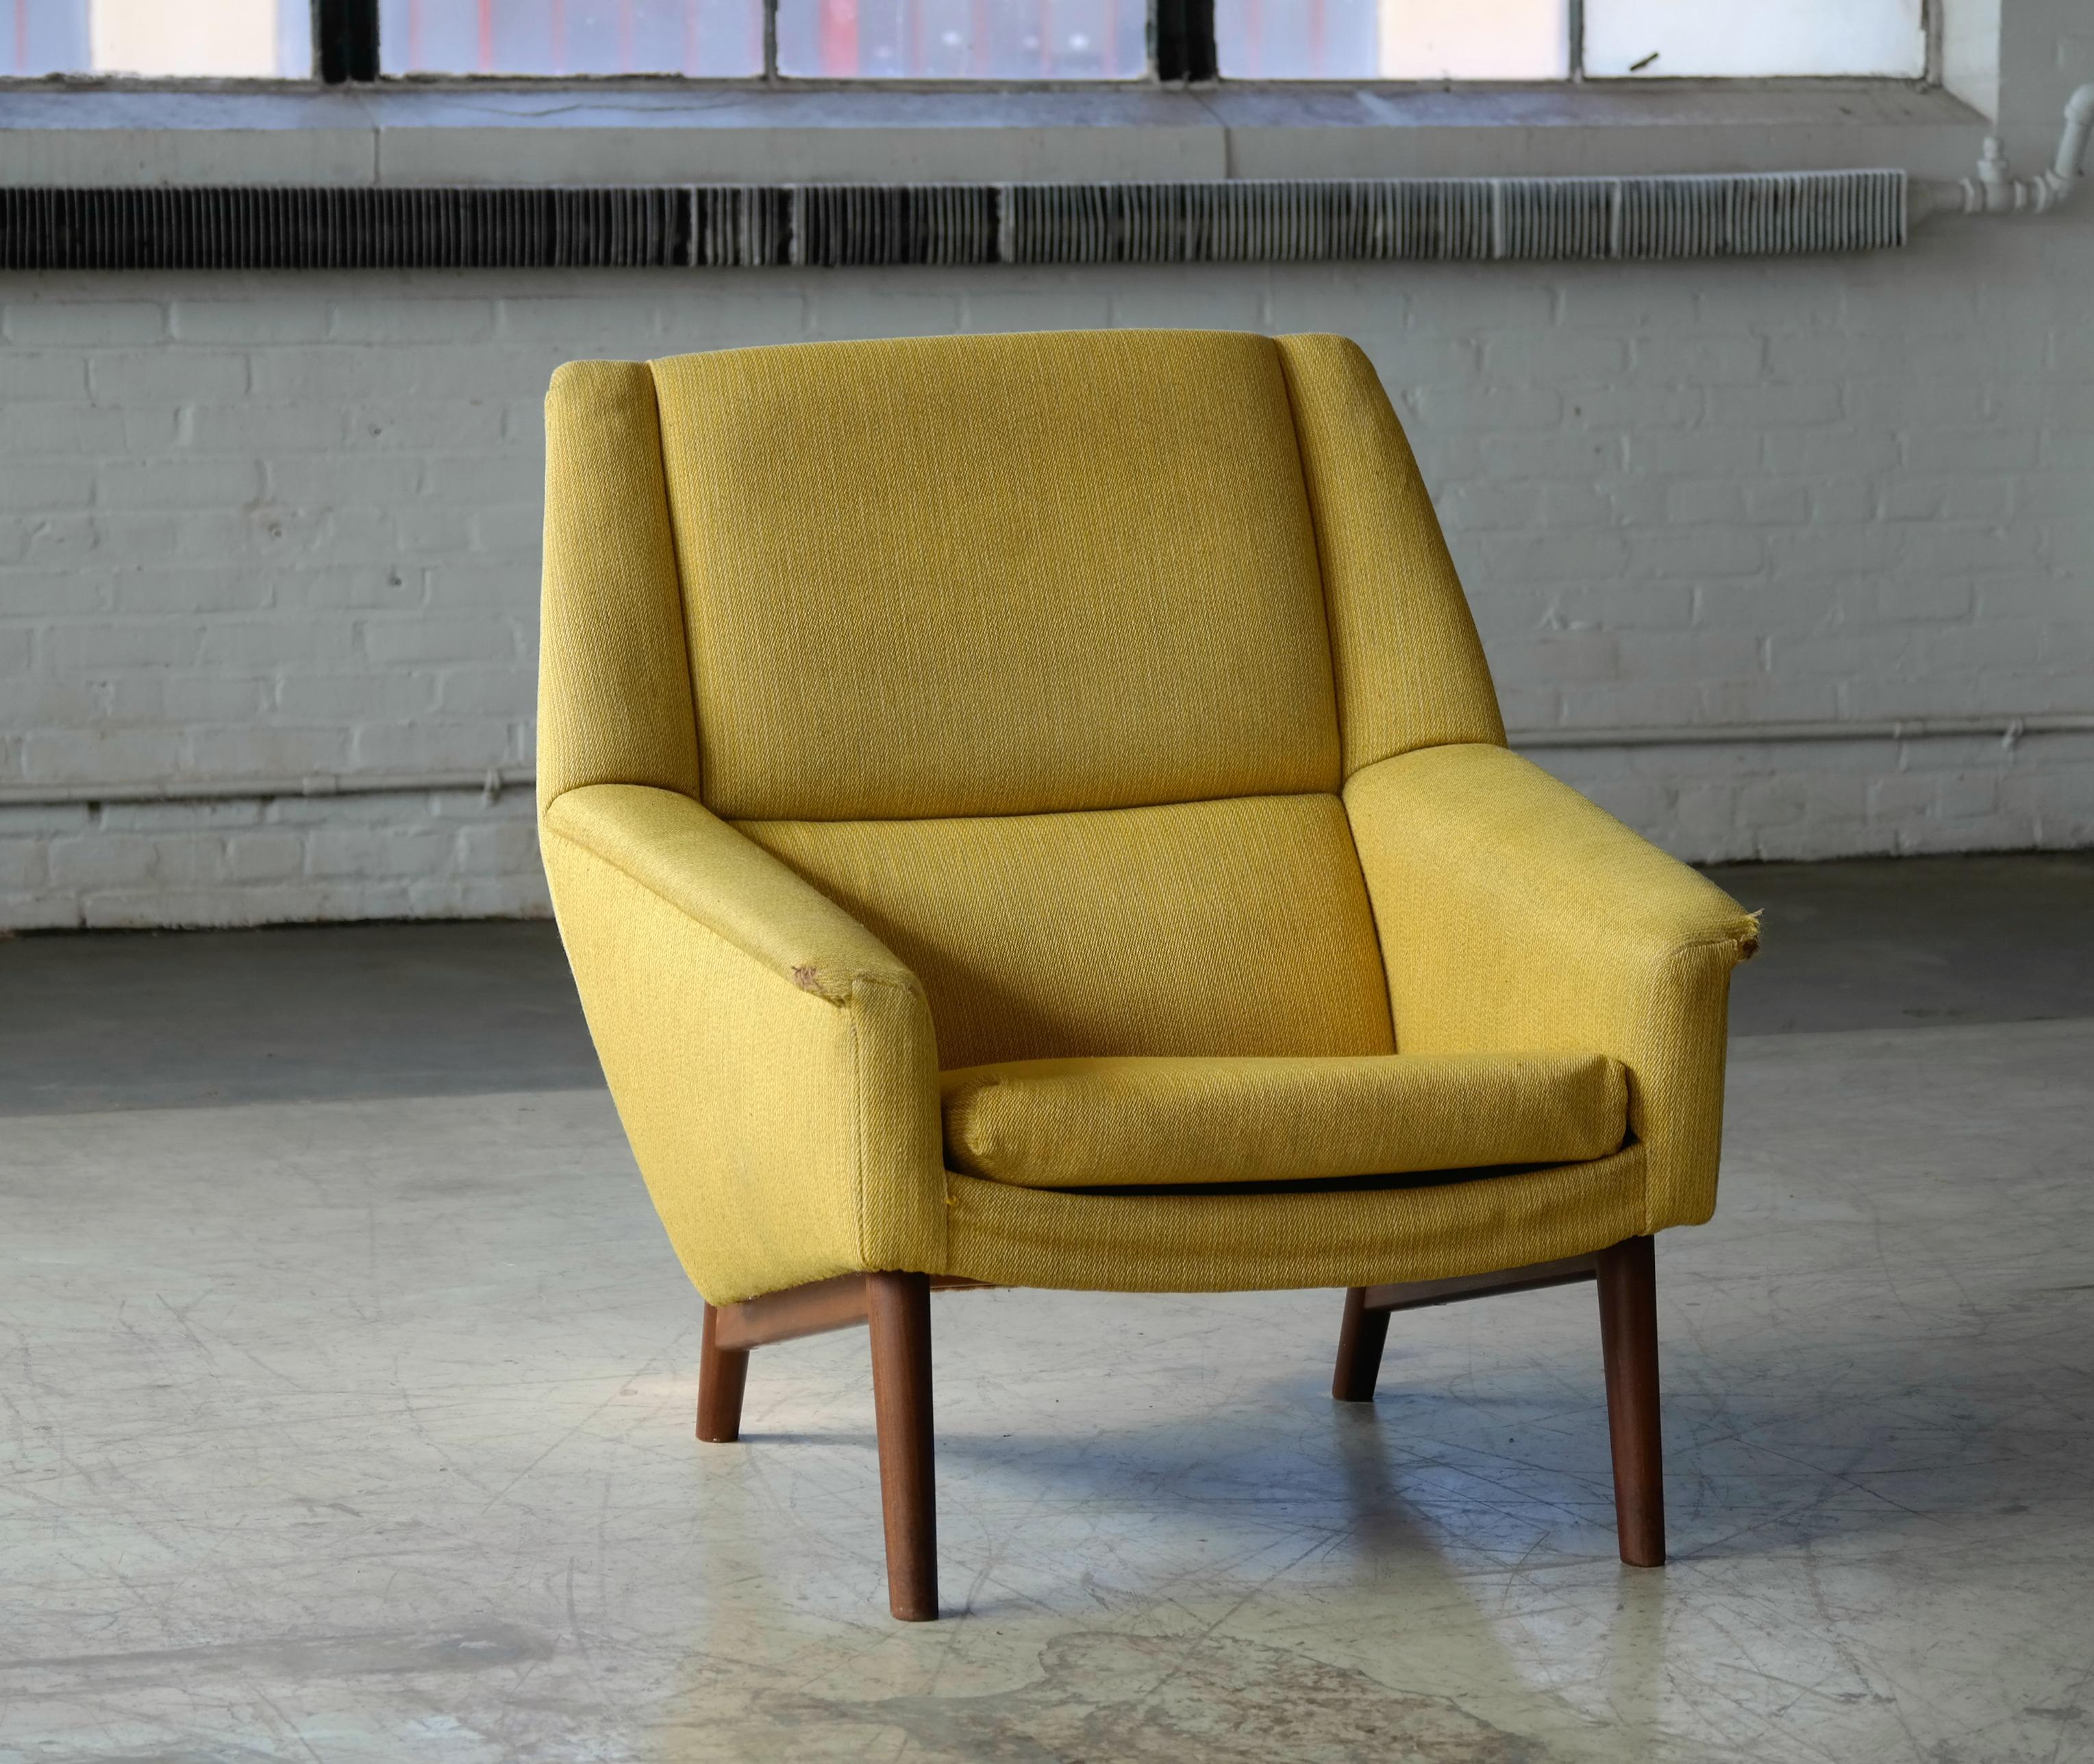 Mid-Century Modern Folke Ohlsson 1950s Teak Lounge Chair for Fritz Hansen Danish Midcentury